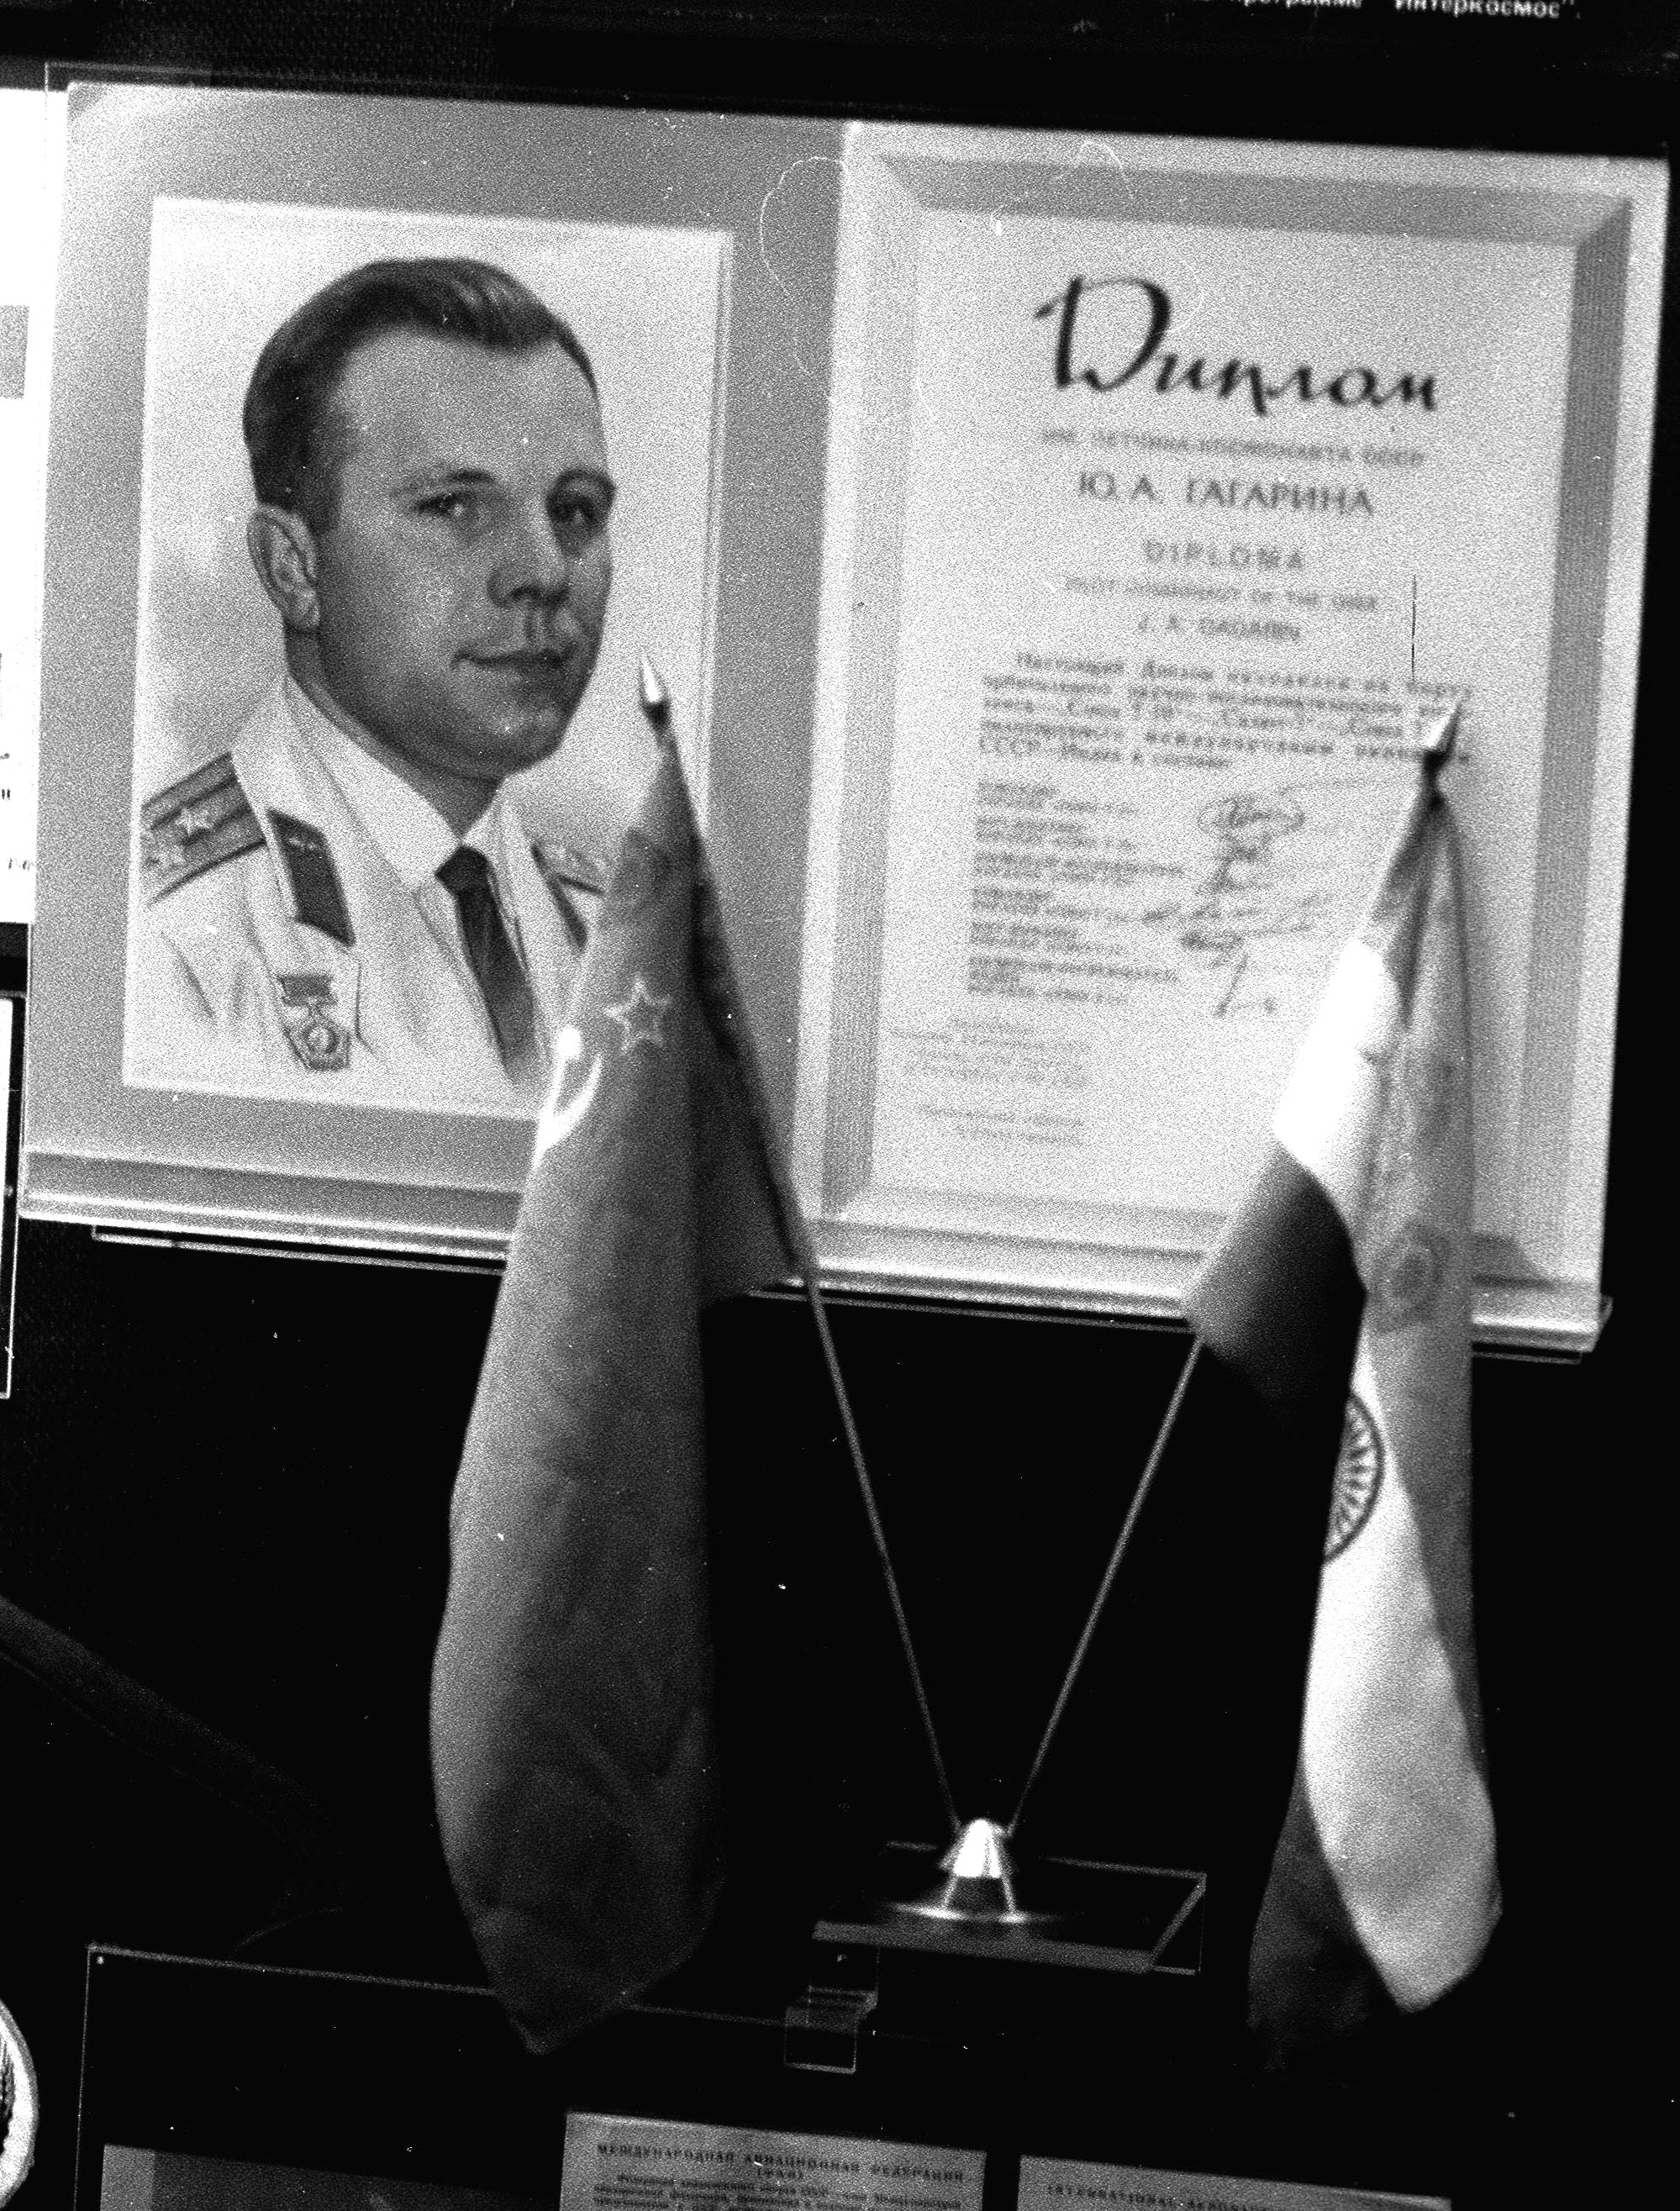 Un particolare del diploma di Gagarin conservato al museo a lui dedicato a Mosca